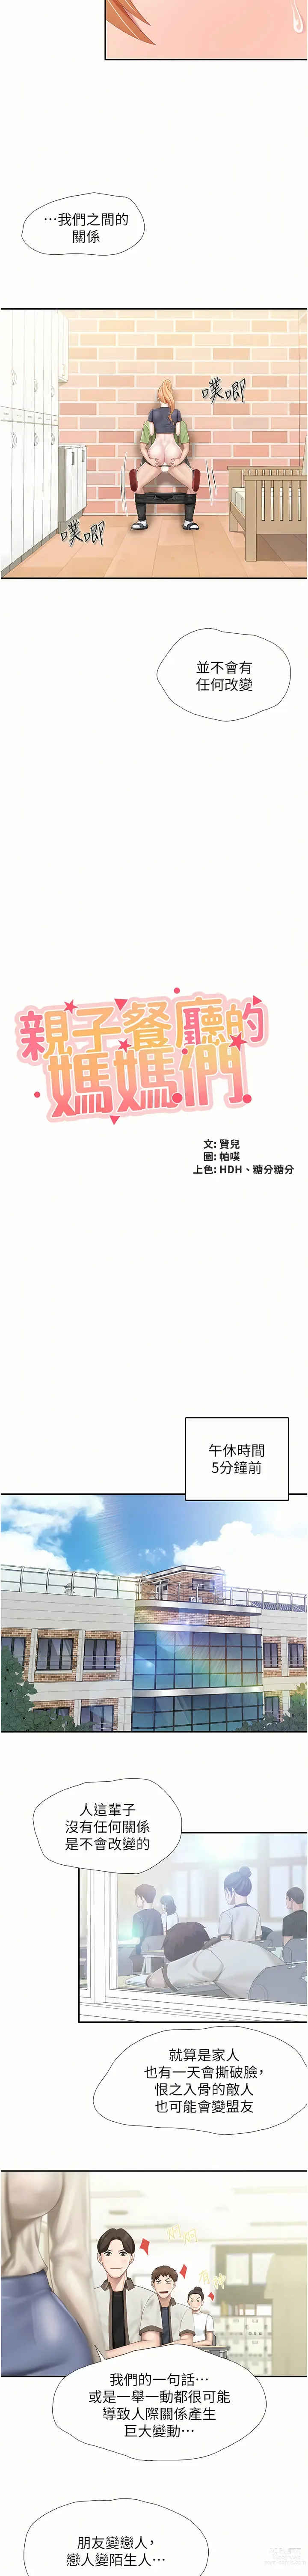 Page 1991 of manga 亲子餐厅的妈妈们 1-50